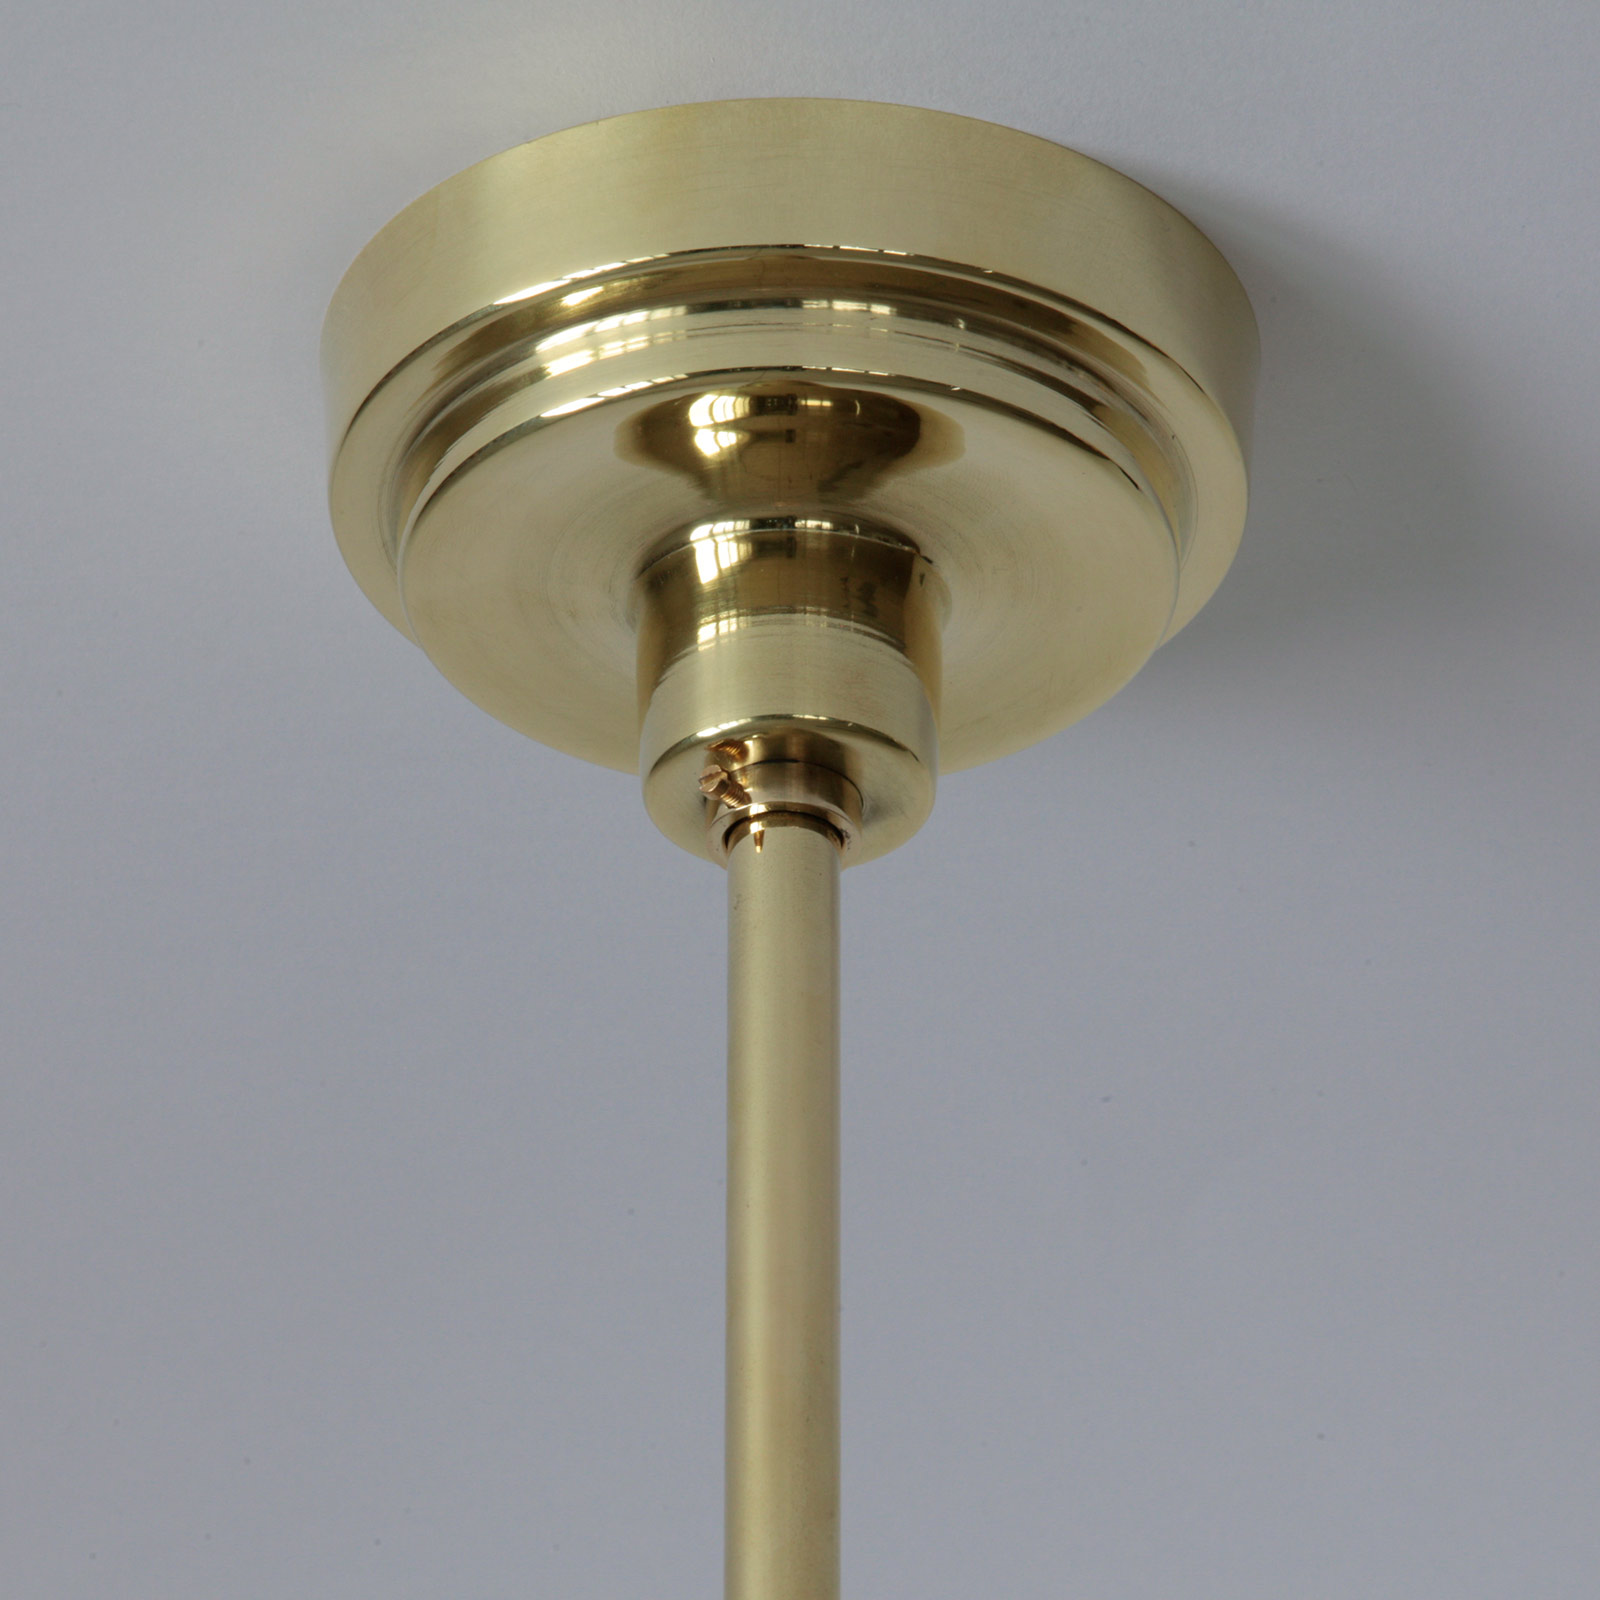 Elegante Ring-Pendelleuchte mit Opalglas: Balachin (Ø 11 cm), hier in Messing poliert und lackiert